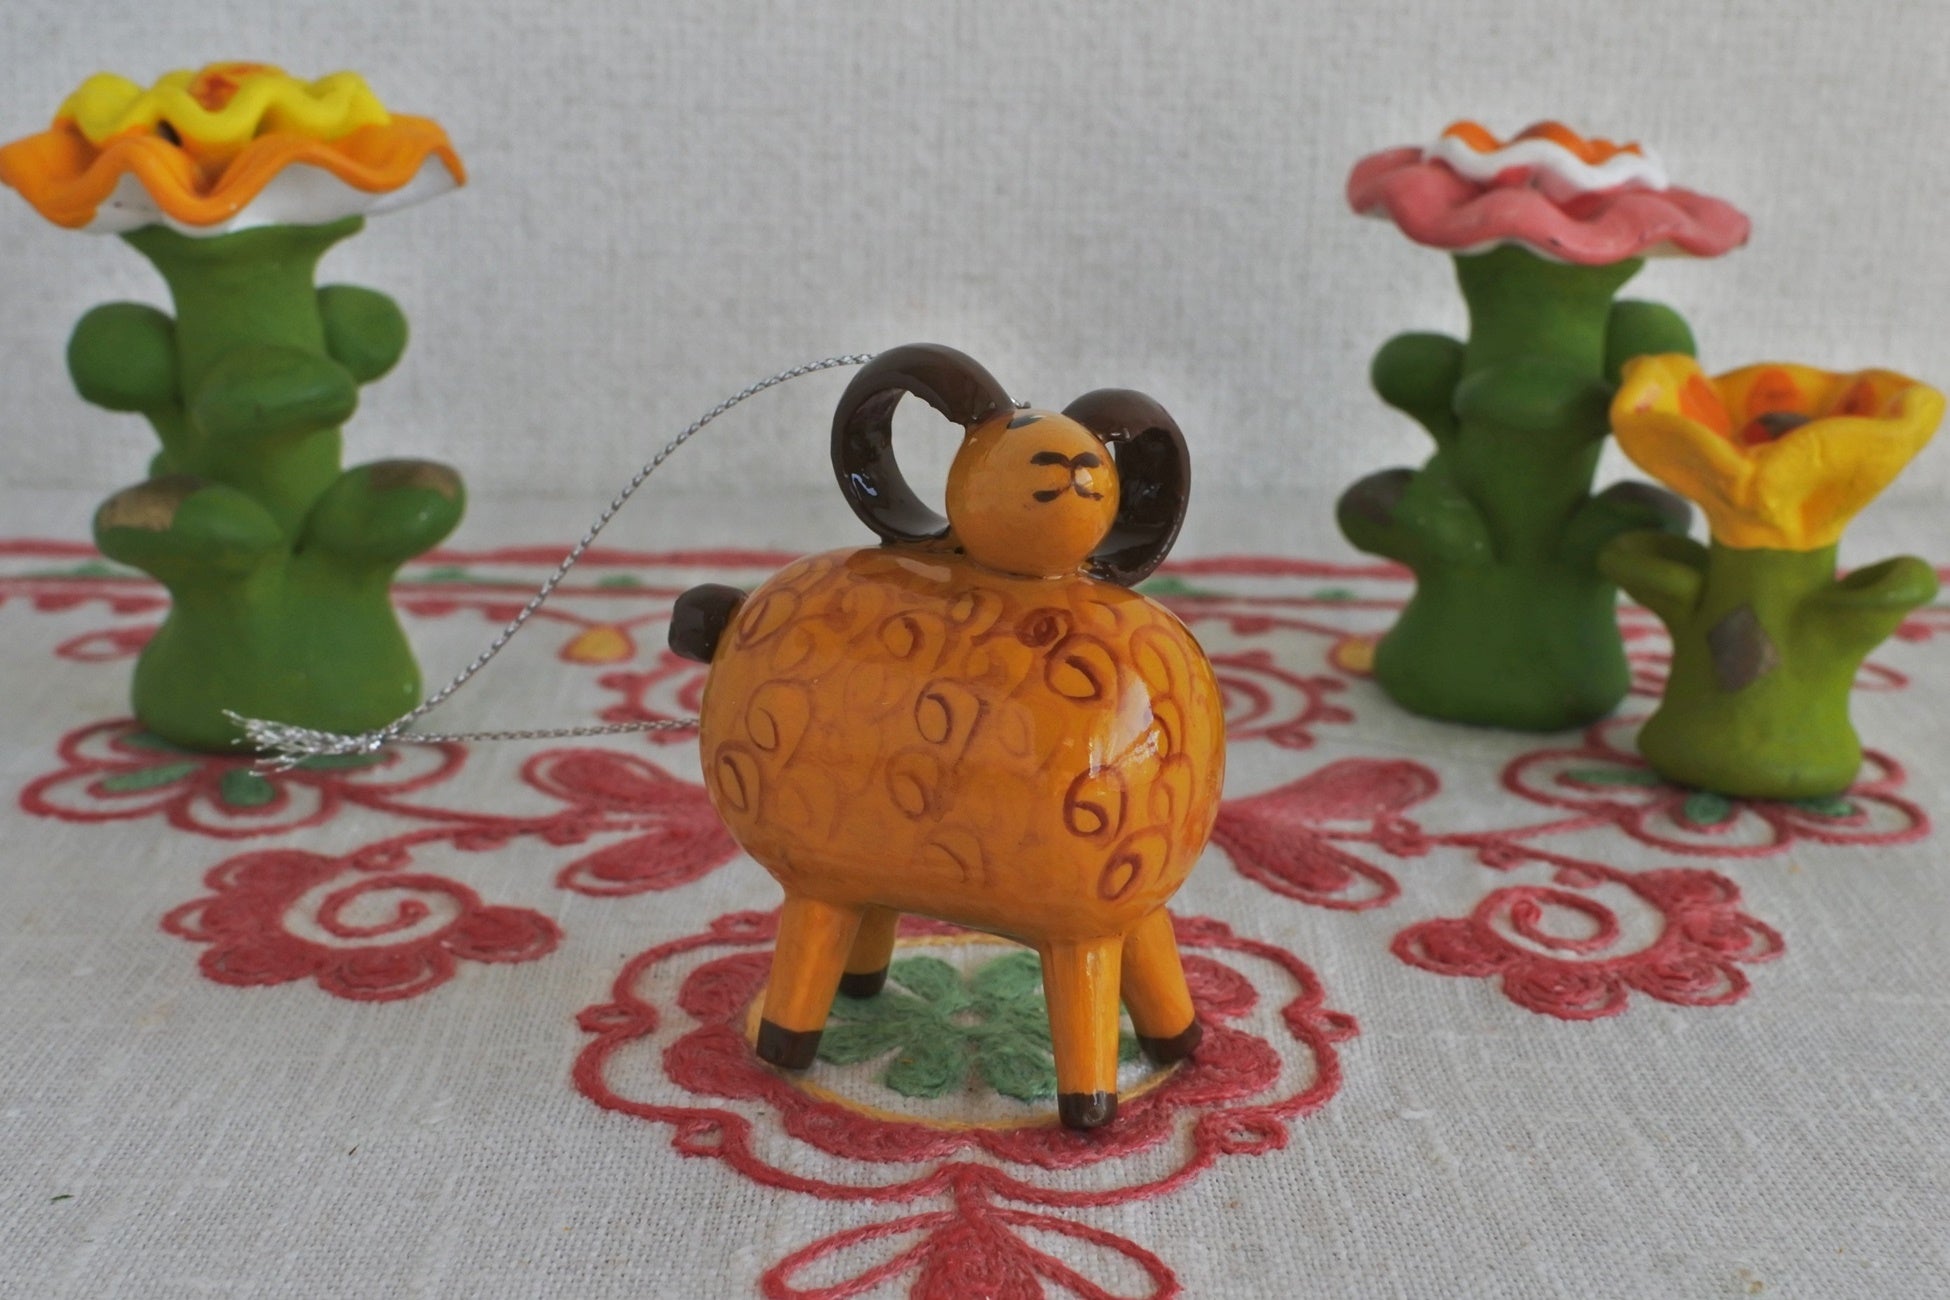 ロシア民芸品 木の人形 マトリョーシカ 動物 ハンドメイド ロシア雑貨 